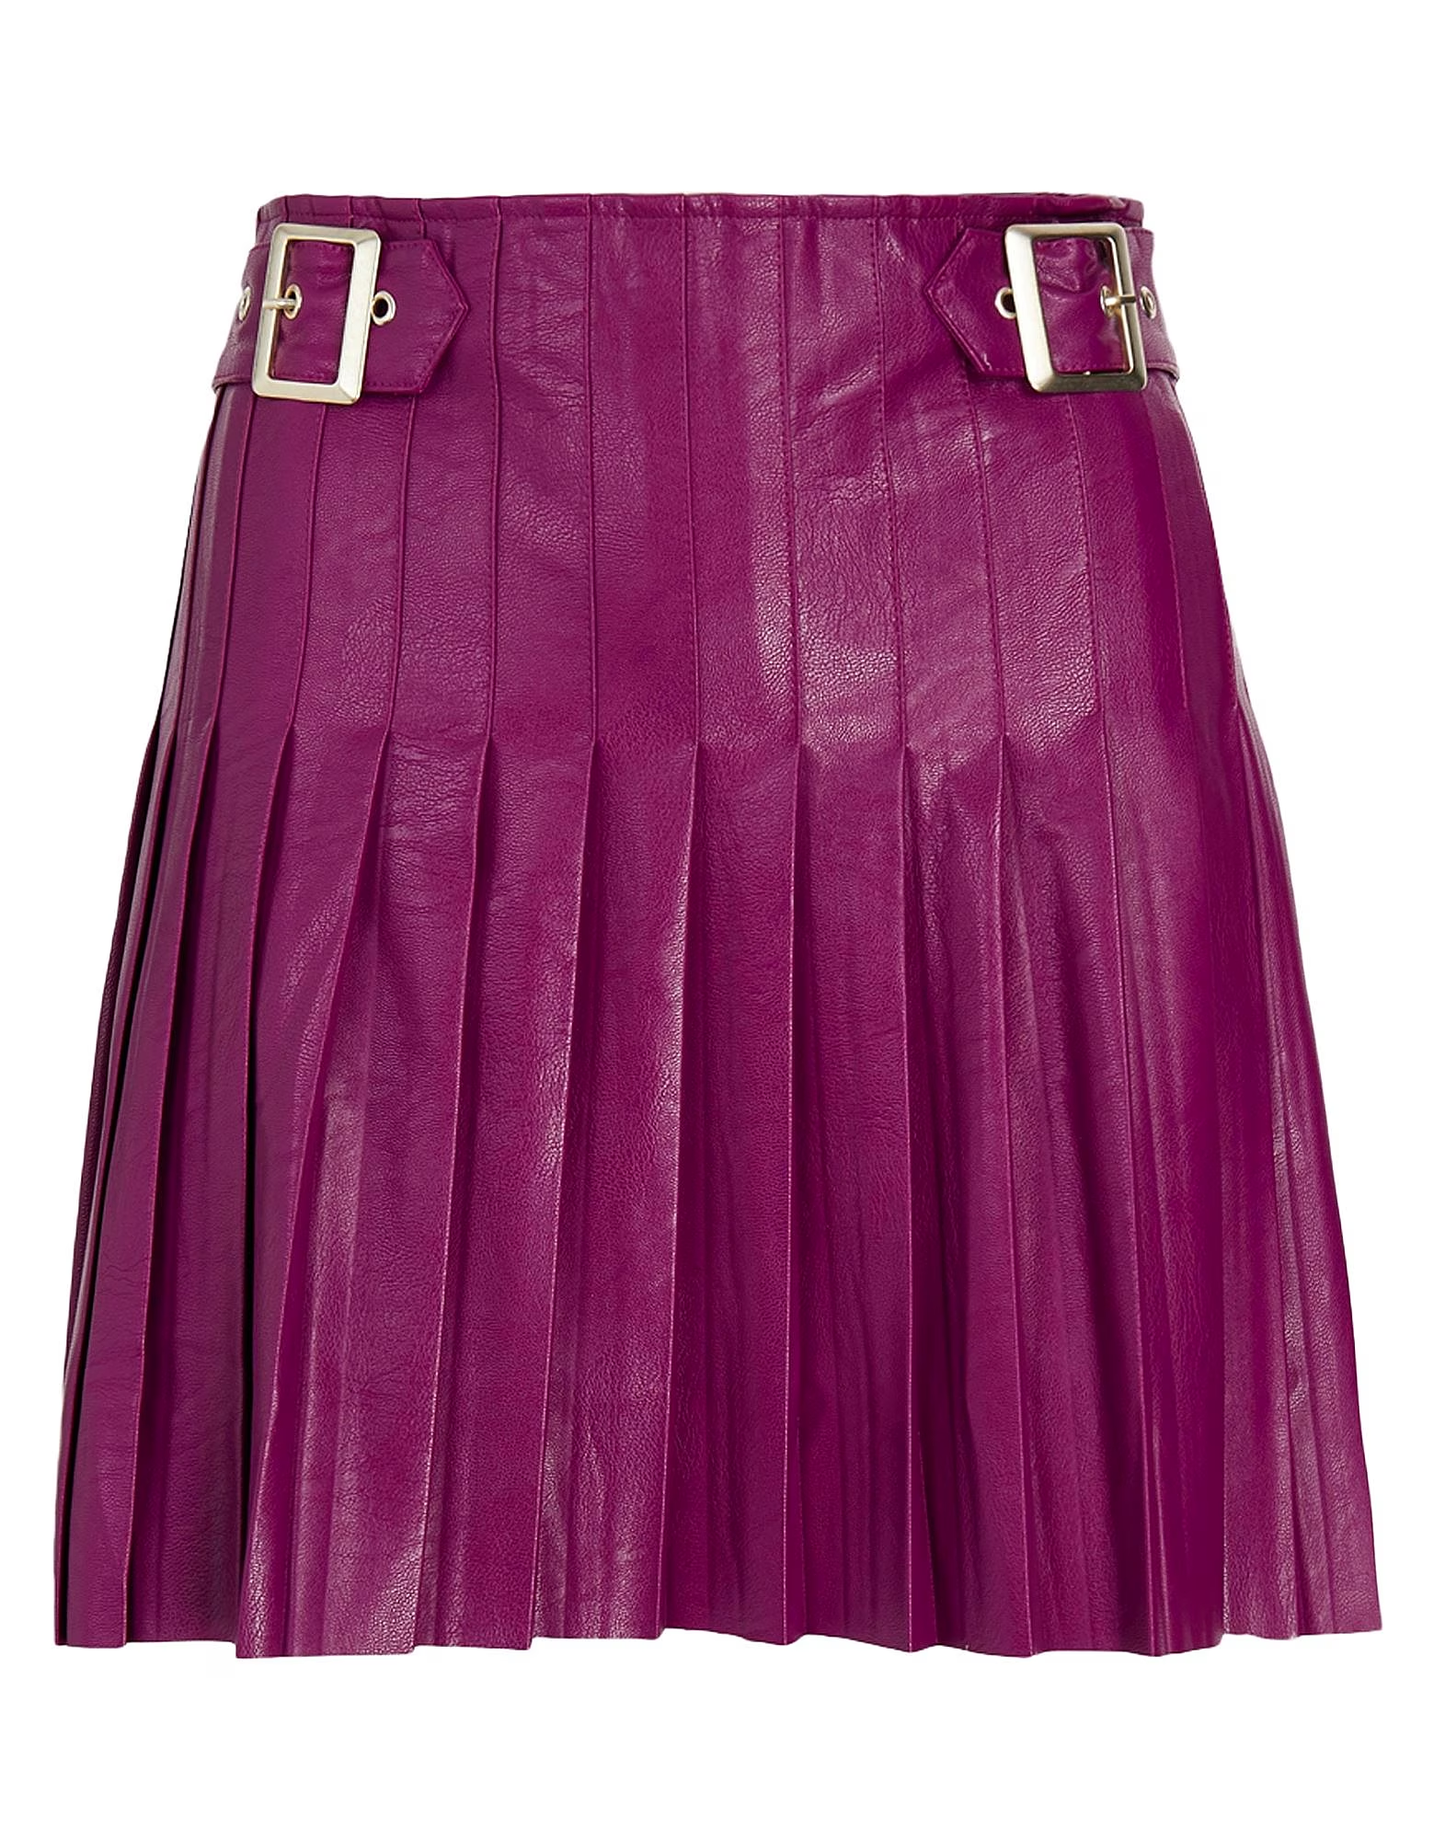 Parioli Pleated Mini Skirt with Buckles